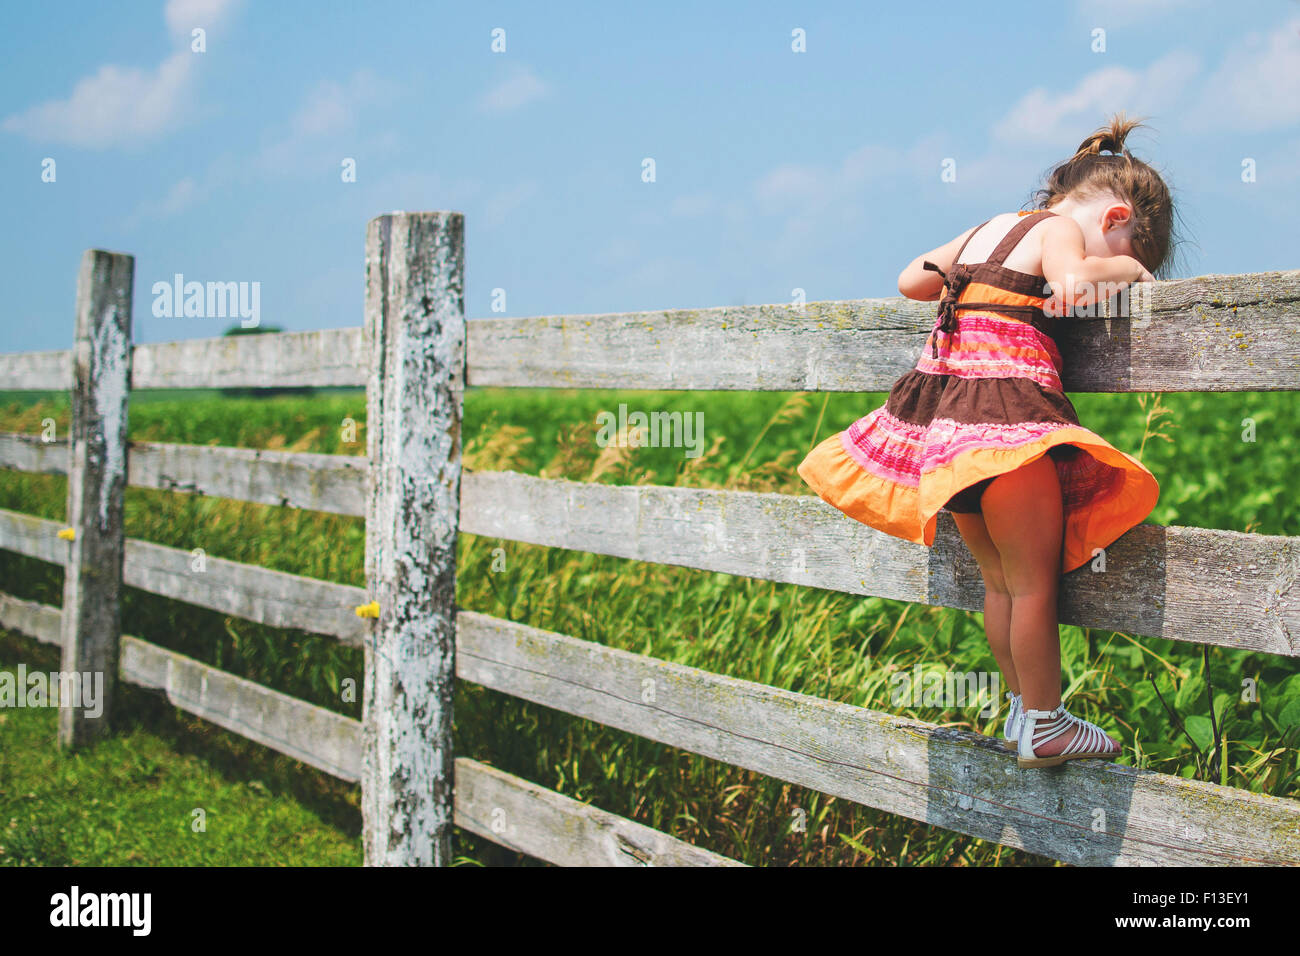 Vista lateral de una chica de pie sobre una valla mirando hacia abajo Foto de stock